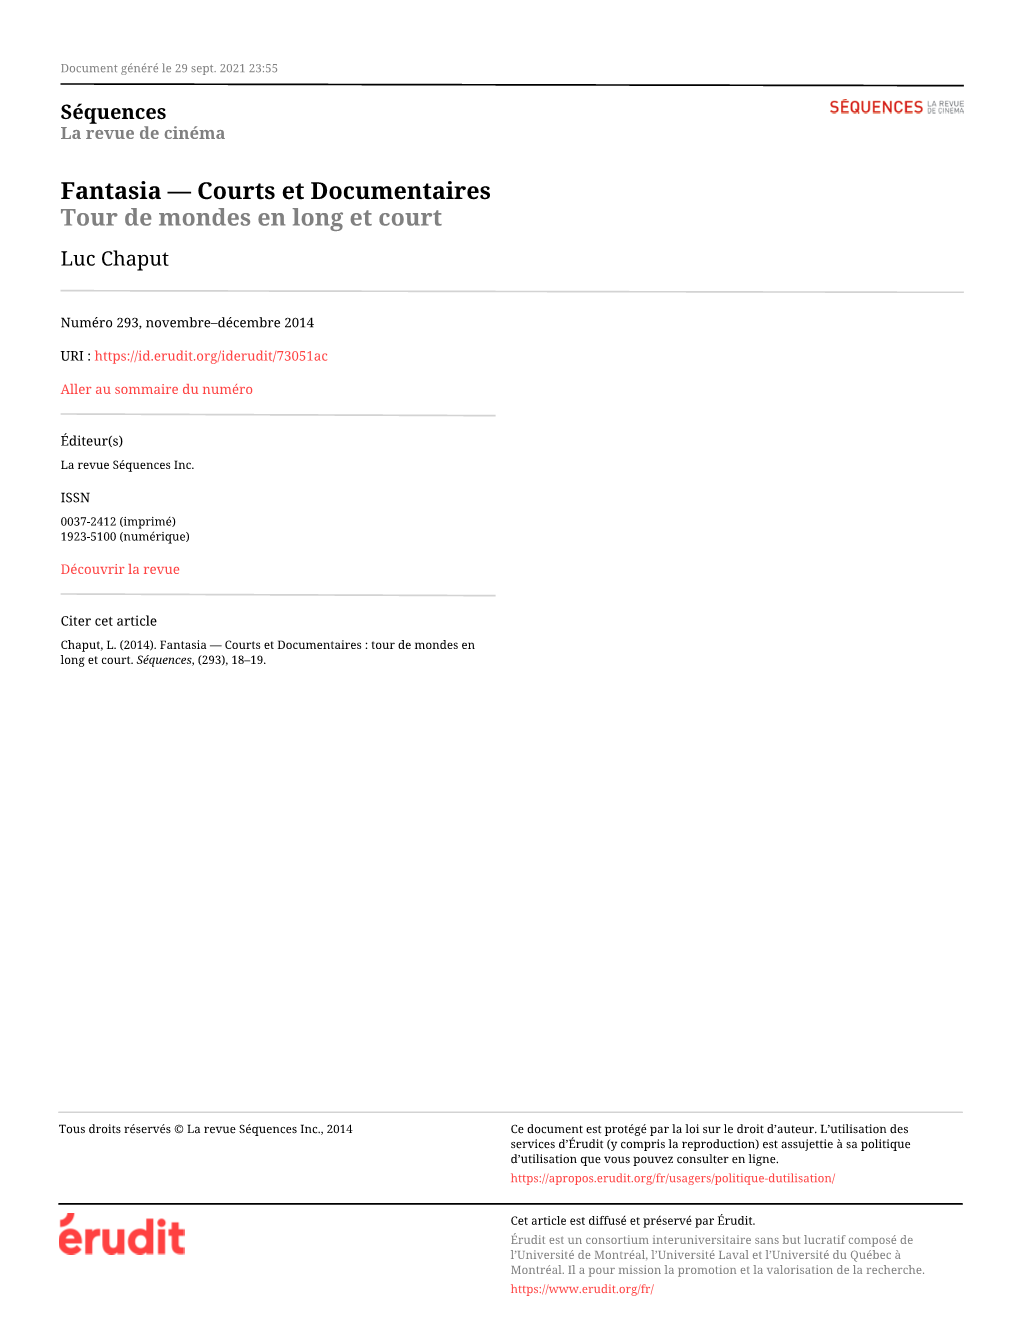 Fantasia — Courts Et Documentaires Tour De Mondes En Long Et Court Luc Chaput